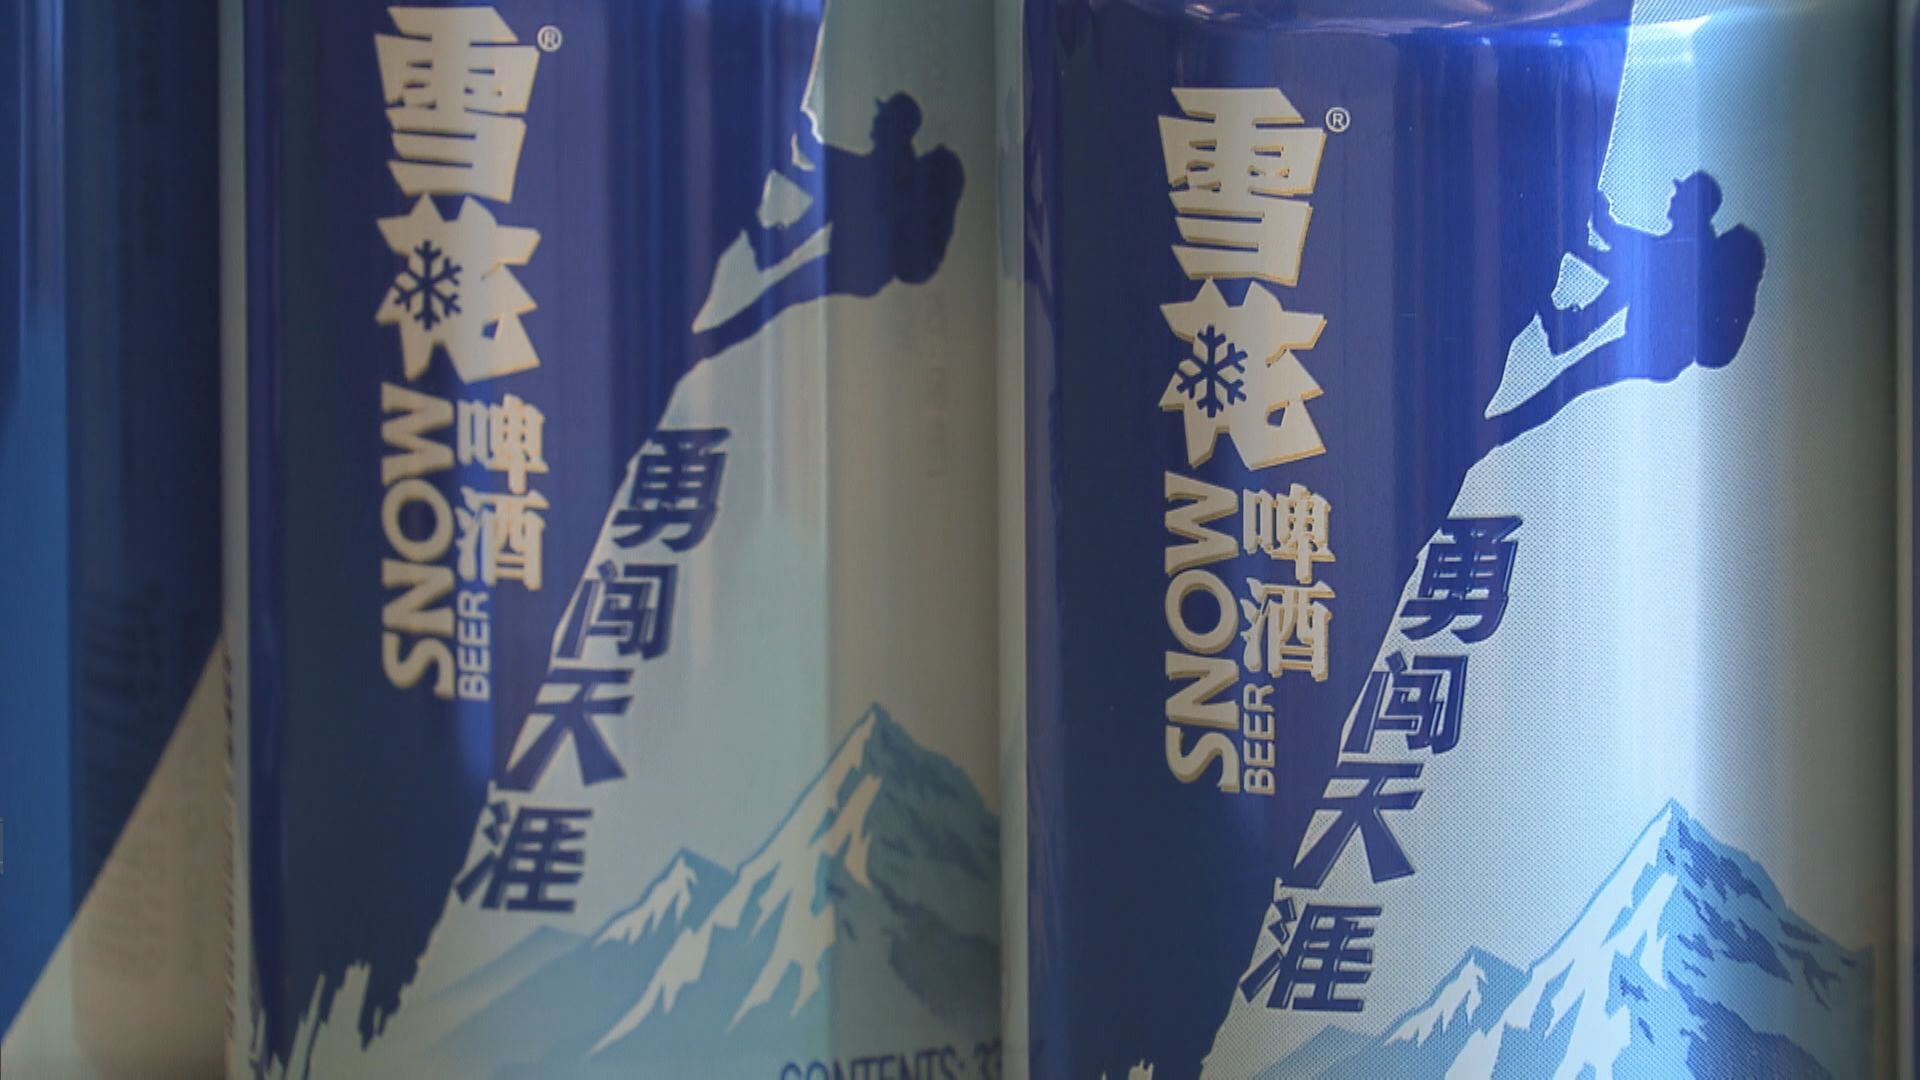 【藍籌業績】潤啤半年純利升22% 中期息增22%至28.7分